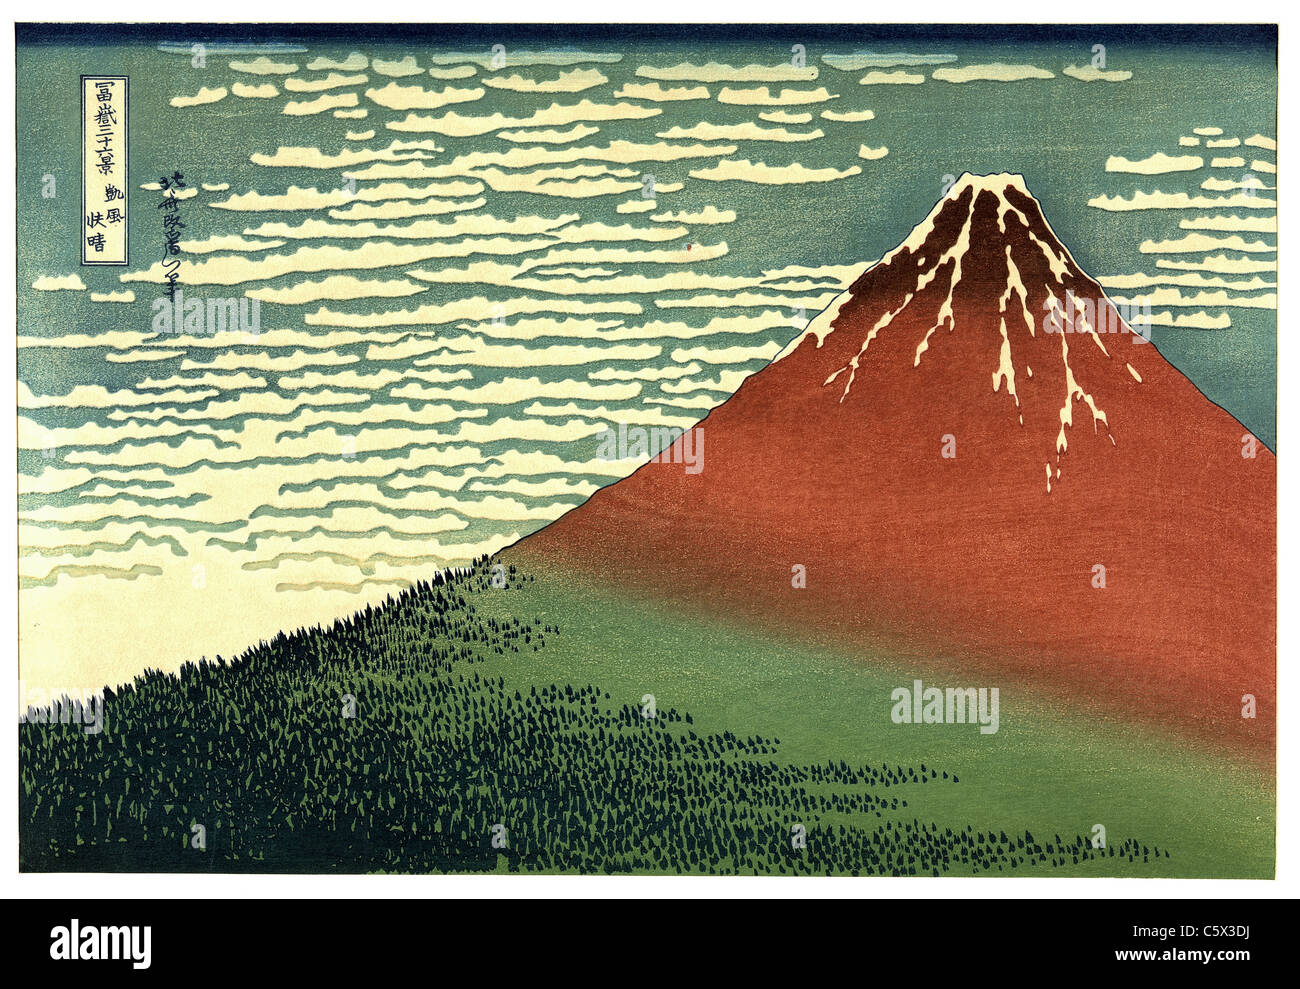 South Wind, klaren Himmel (Fein Wind, klarer Morgen, oder Rot, Fuji) von Katsushika Hokusai - Sehr hohe Qualität und Auflösung Stockfoto